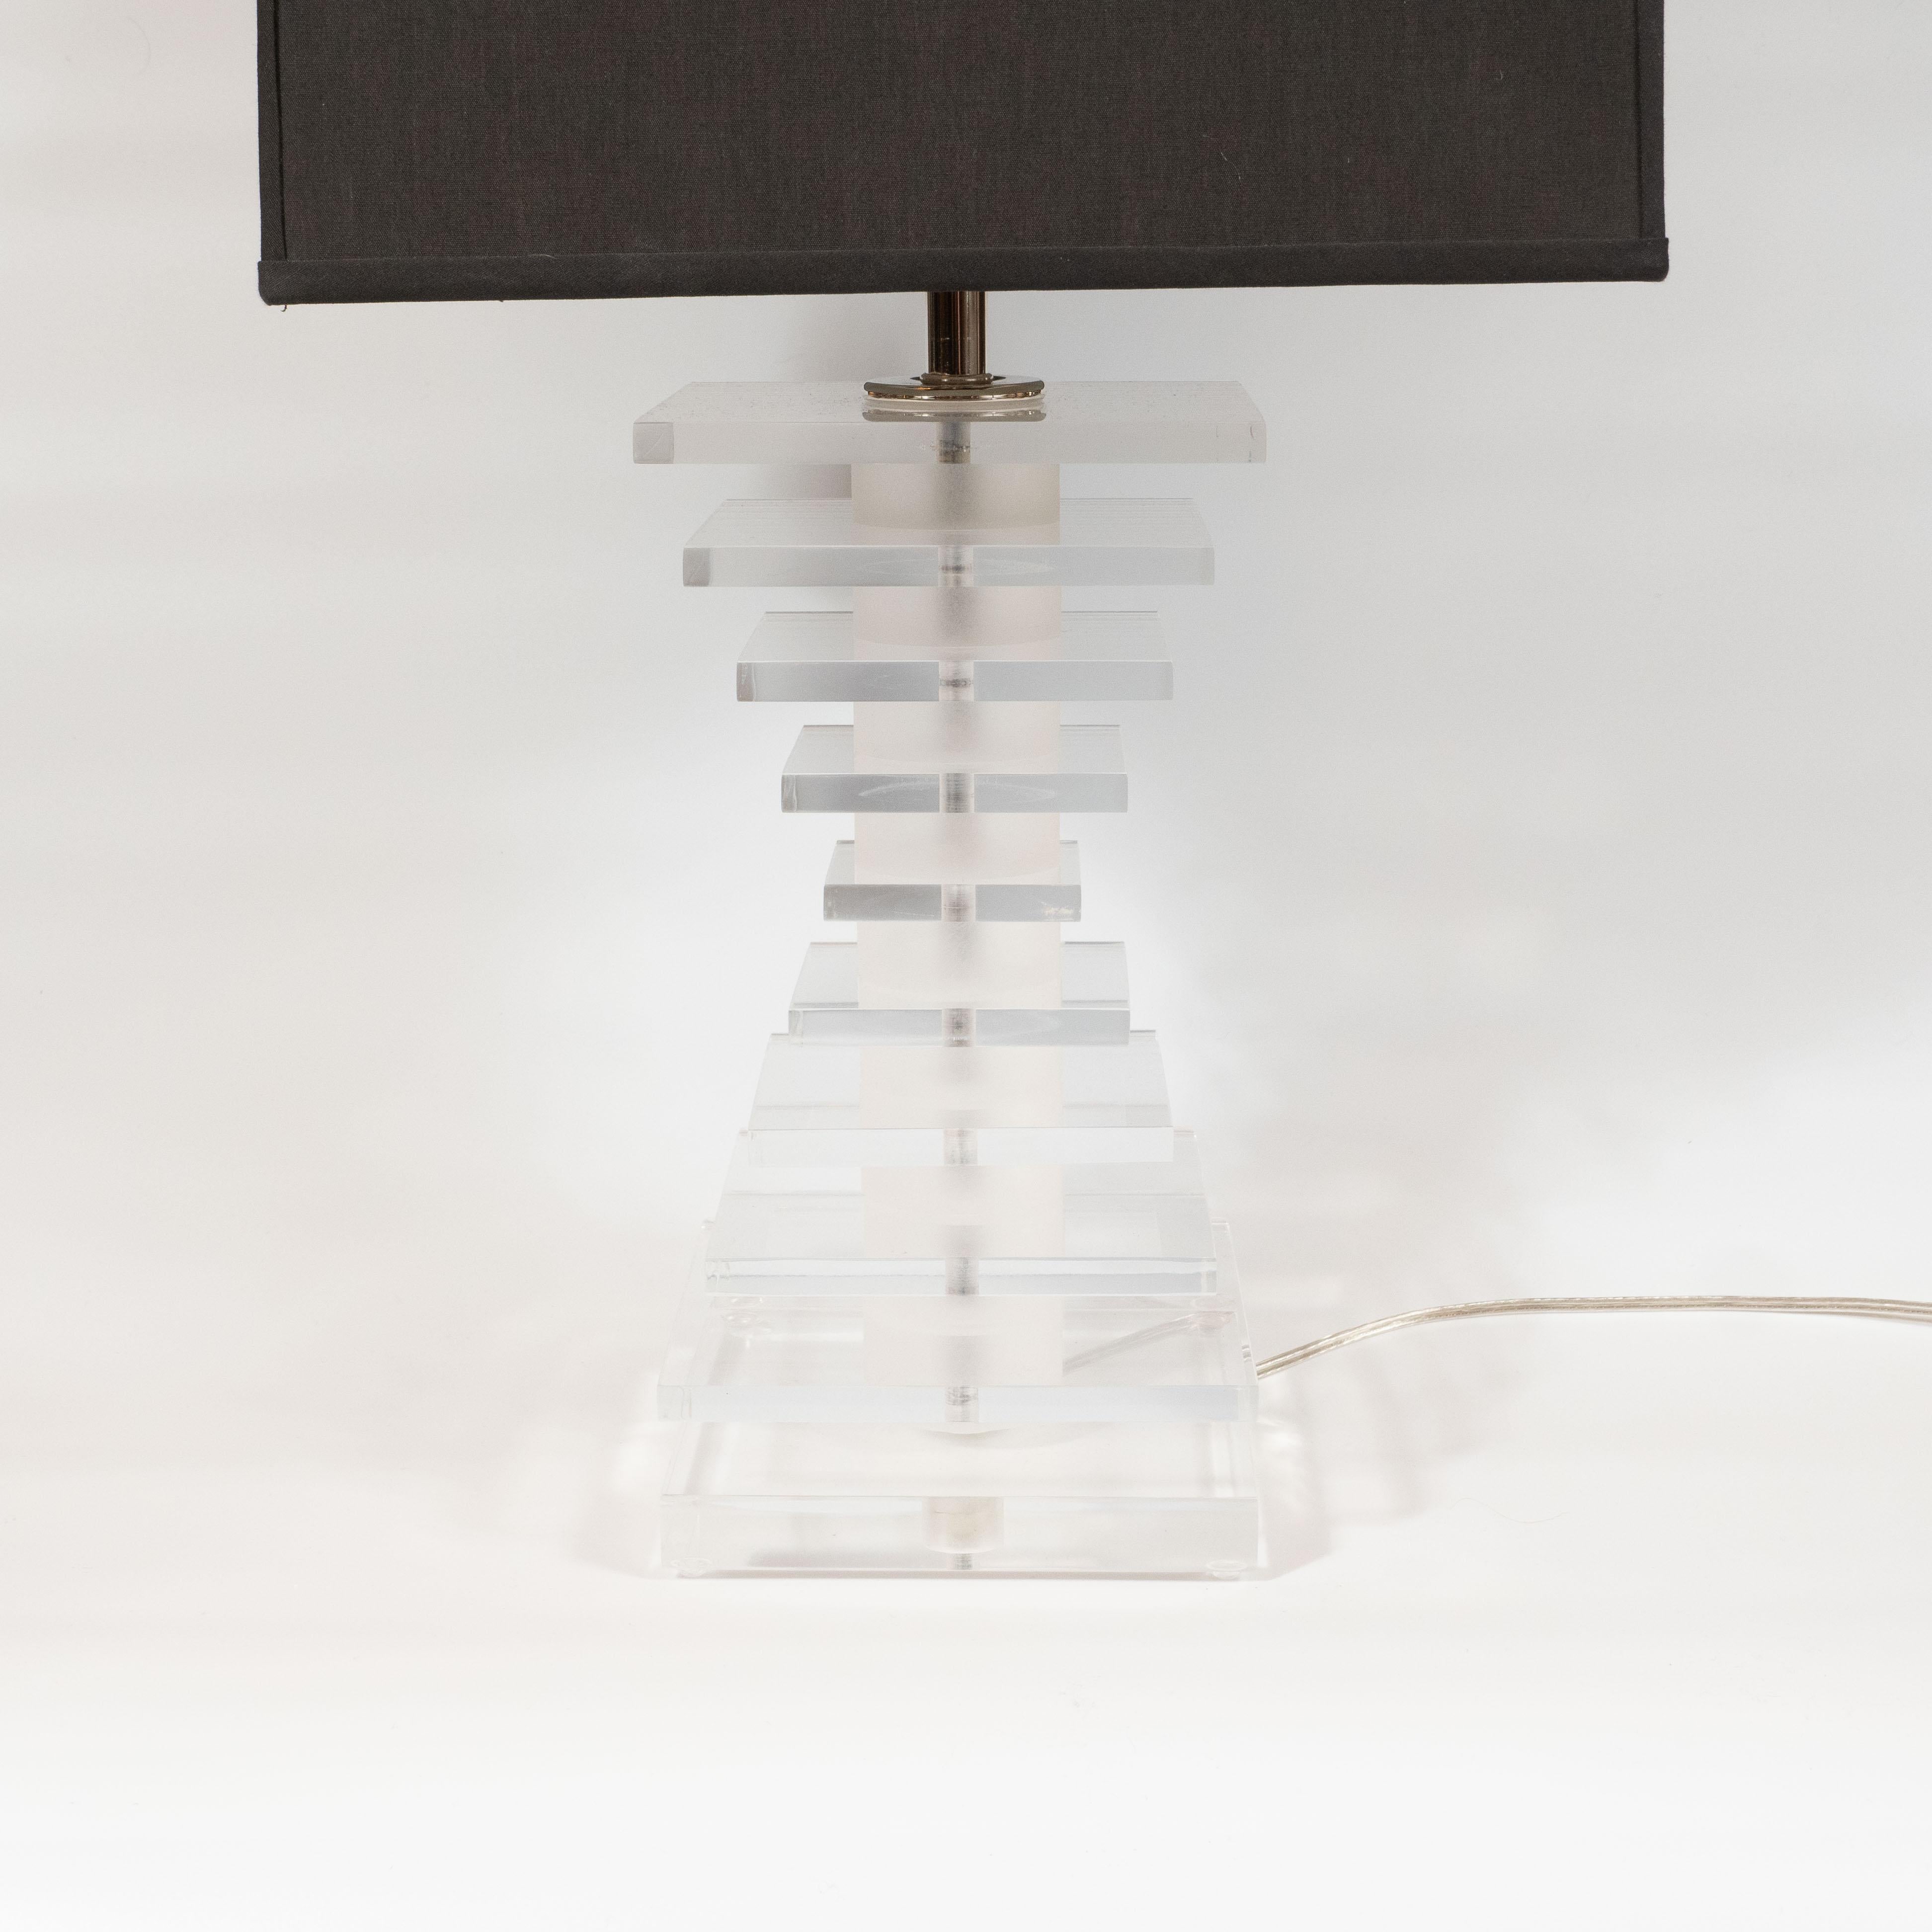 Cette lampe de table chic et sophistiquée de style gratte-ciel en Lucite a été réalisée aux États-Unis vers 1970. Des panneaux de Lucite translucides empilés - alternant avec des bandes givrées dans le même matériau - sont empilés pour créer une